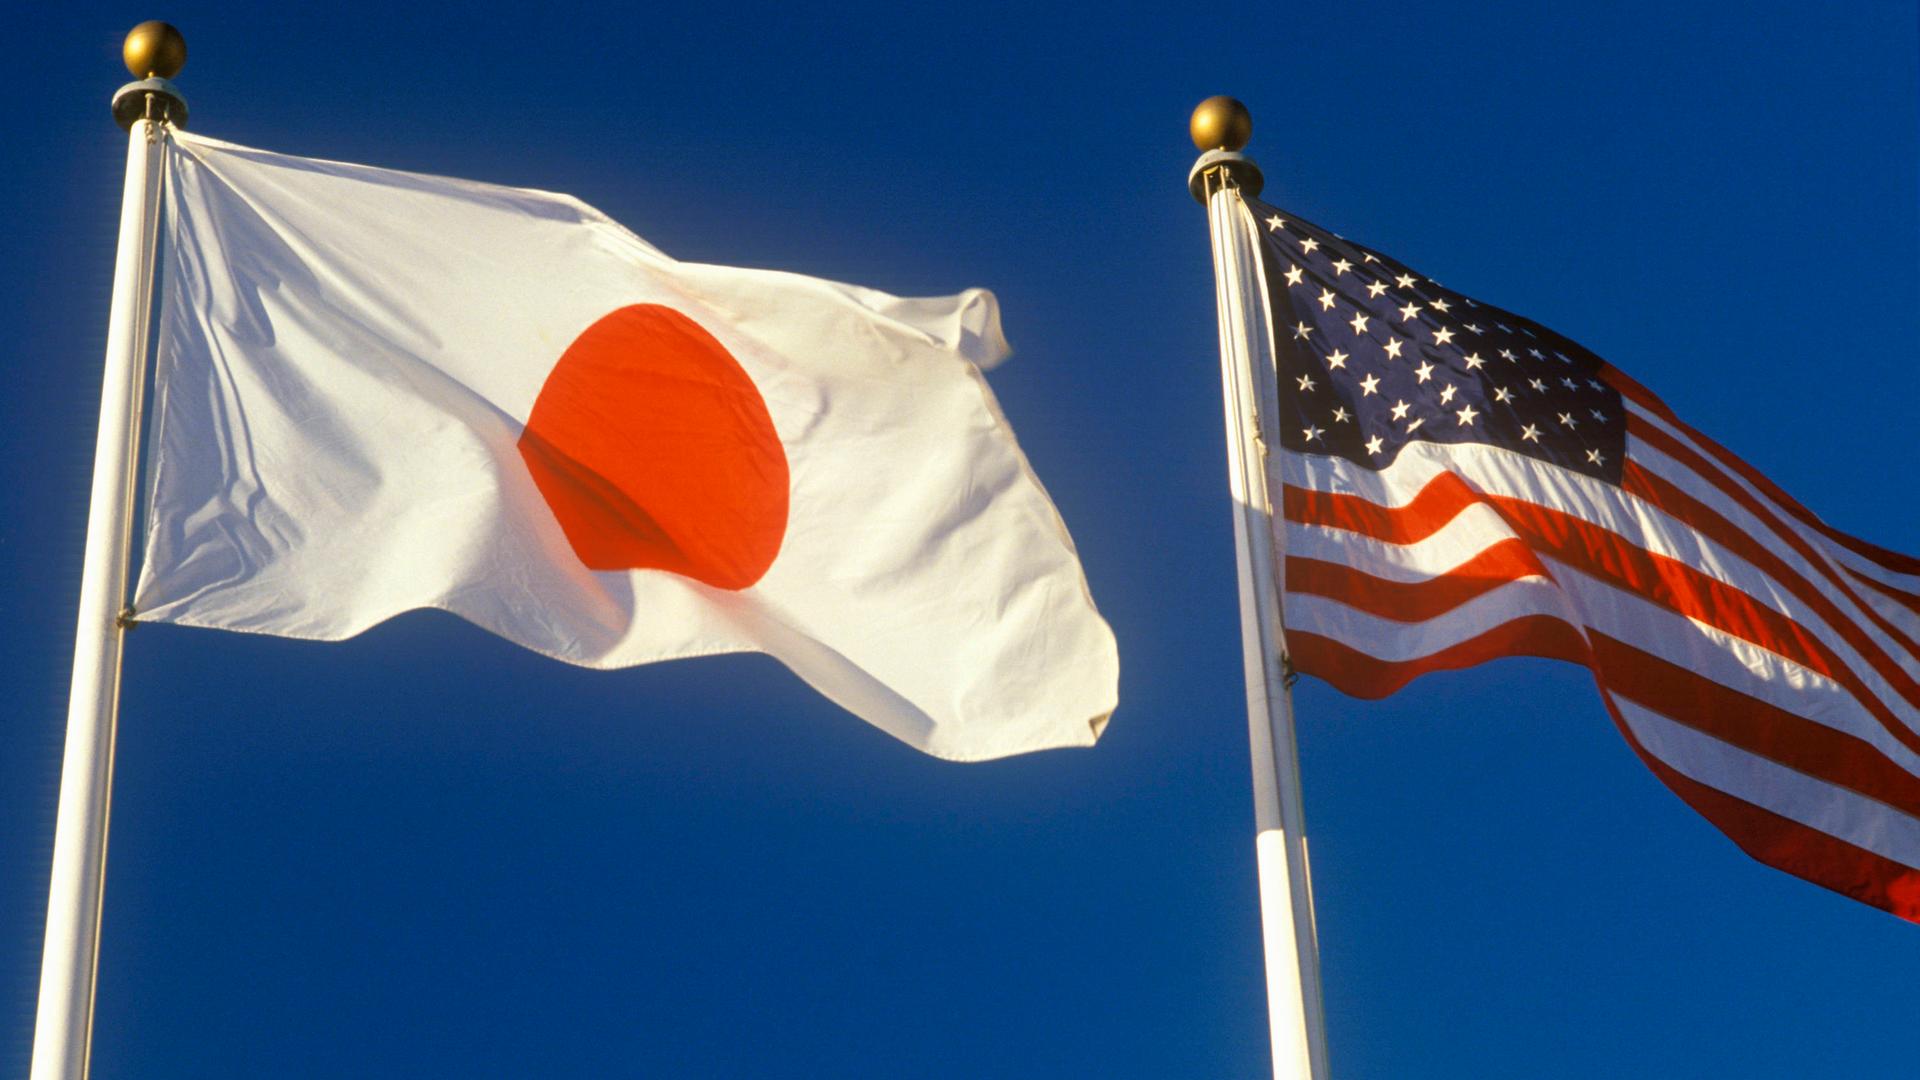 Die amerikanische und die japanische Flagge wehen am blauen Himmel.